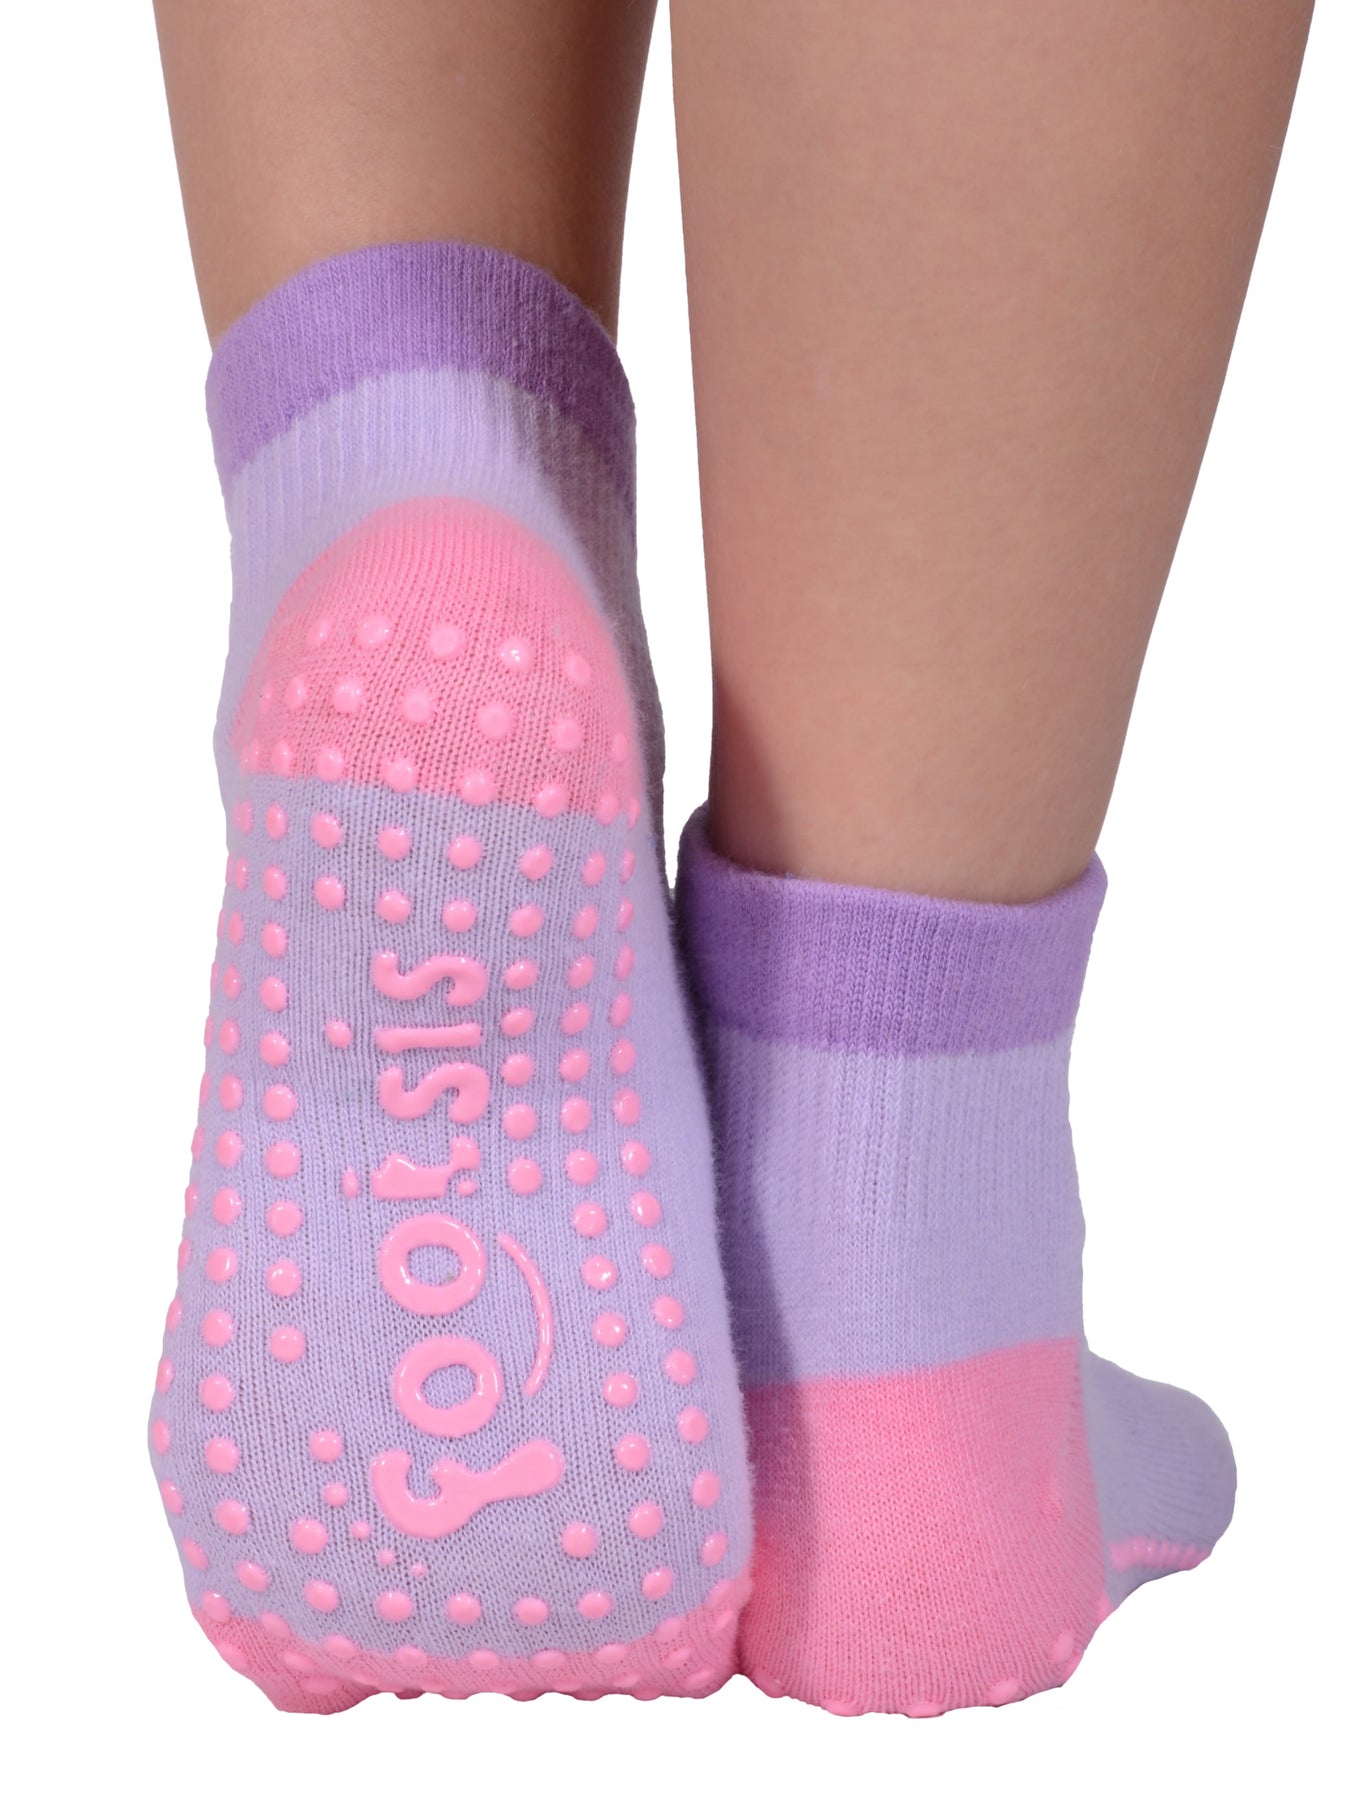 Gripperz Non Slip Socks Medium Pink Pair - MyAussieChemist